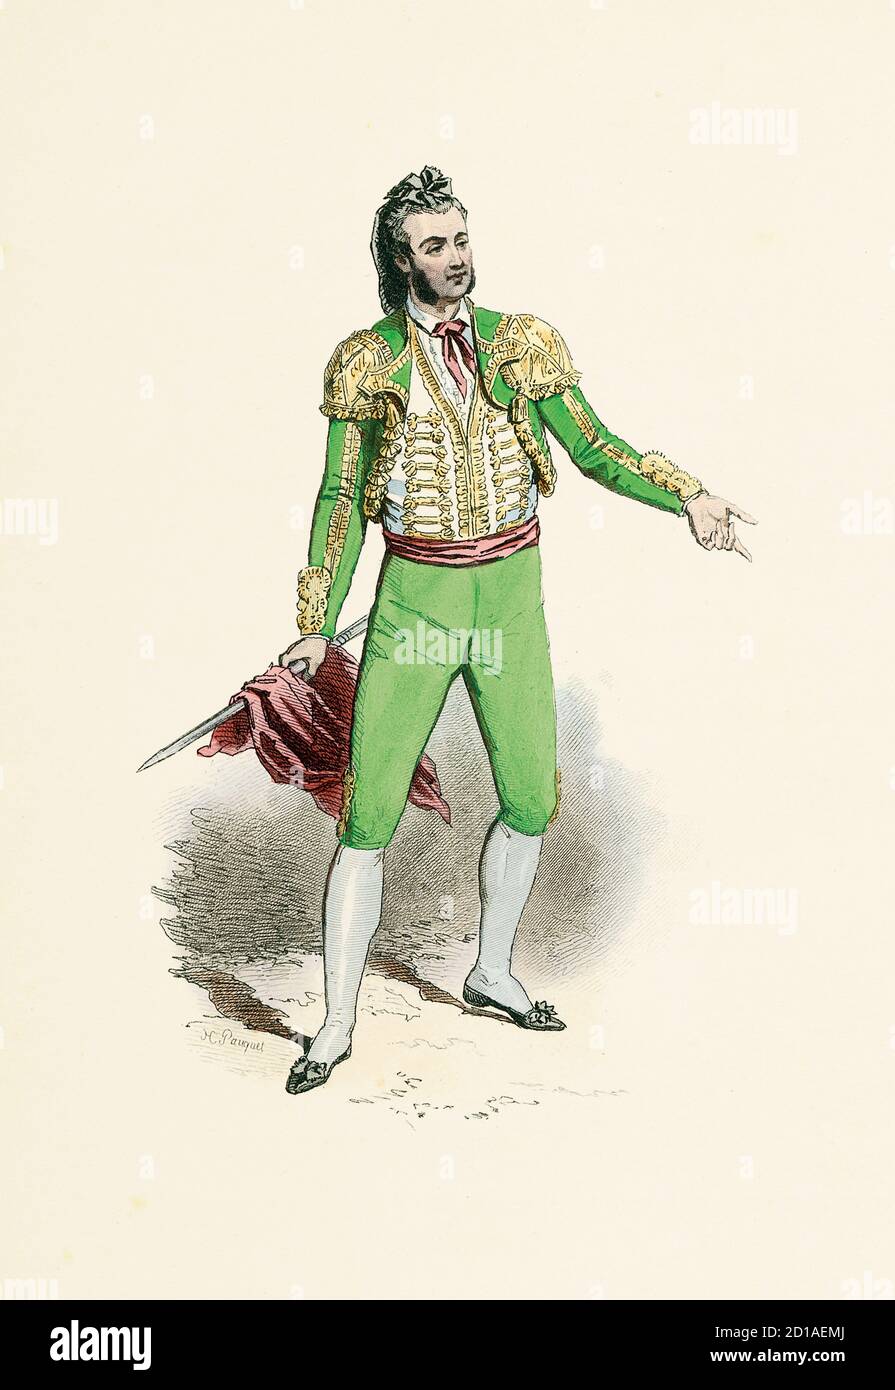 Ritratto di bullfighter nel 1790, incisione a mano di H. Pauquet. Pubblicato nel libro Modes et Costumes Historiques Dessines et Graves par Foto Stock